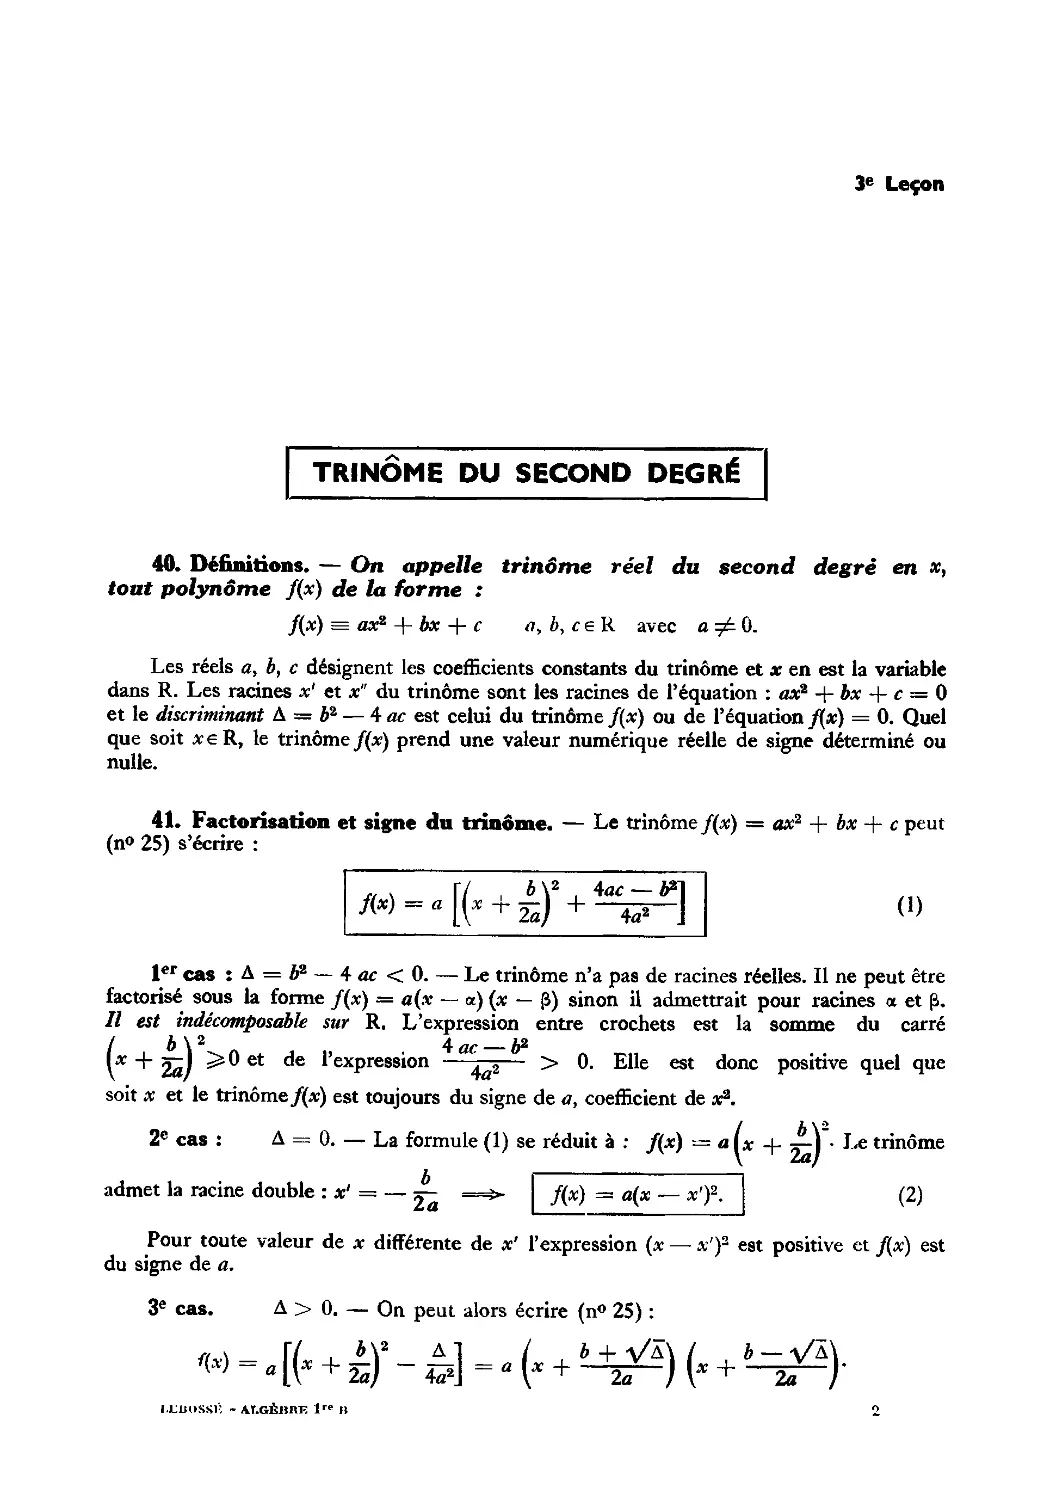 Leçon 3 — Trinôme du second degré — Inéquation du second degré — Comparaison d’un nombre aux racines d’un trinôme
41. Factorisation et signe du trinôme